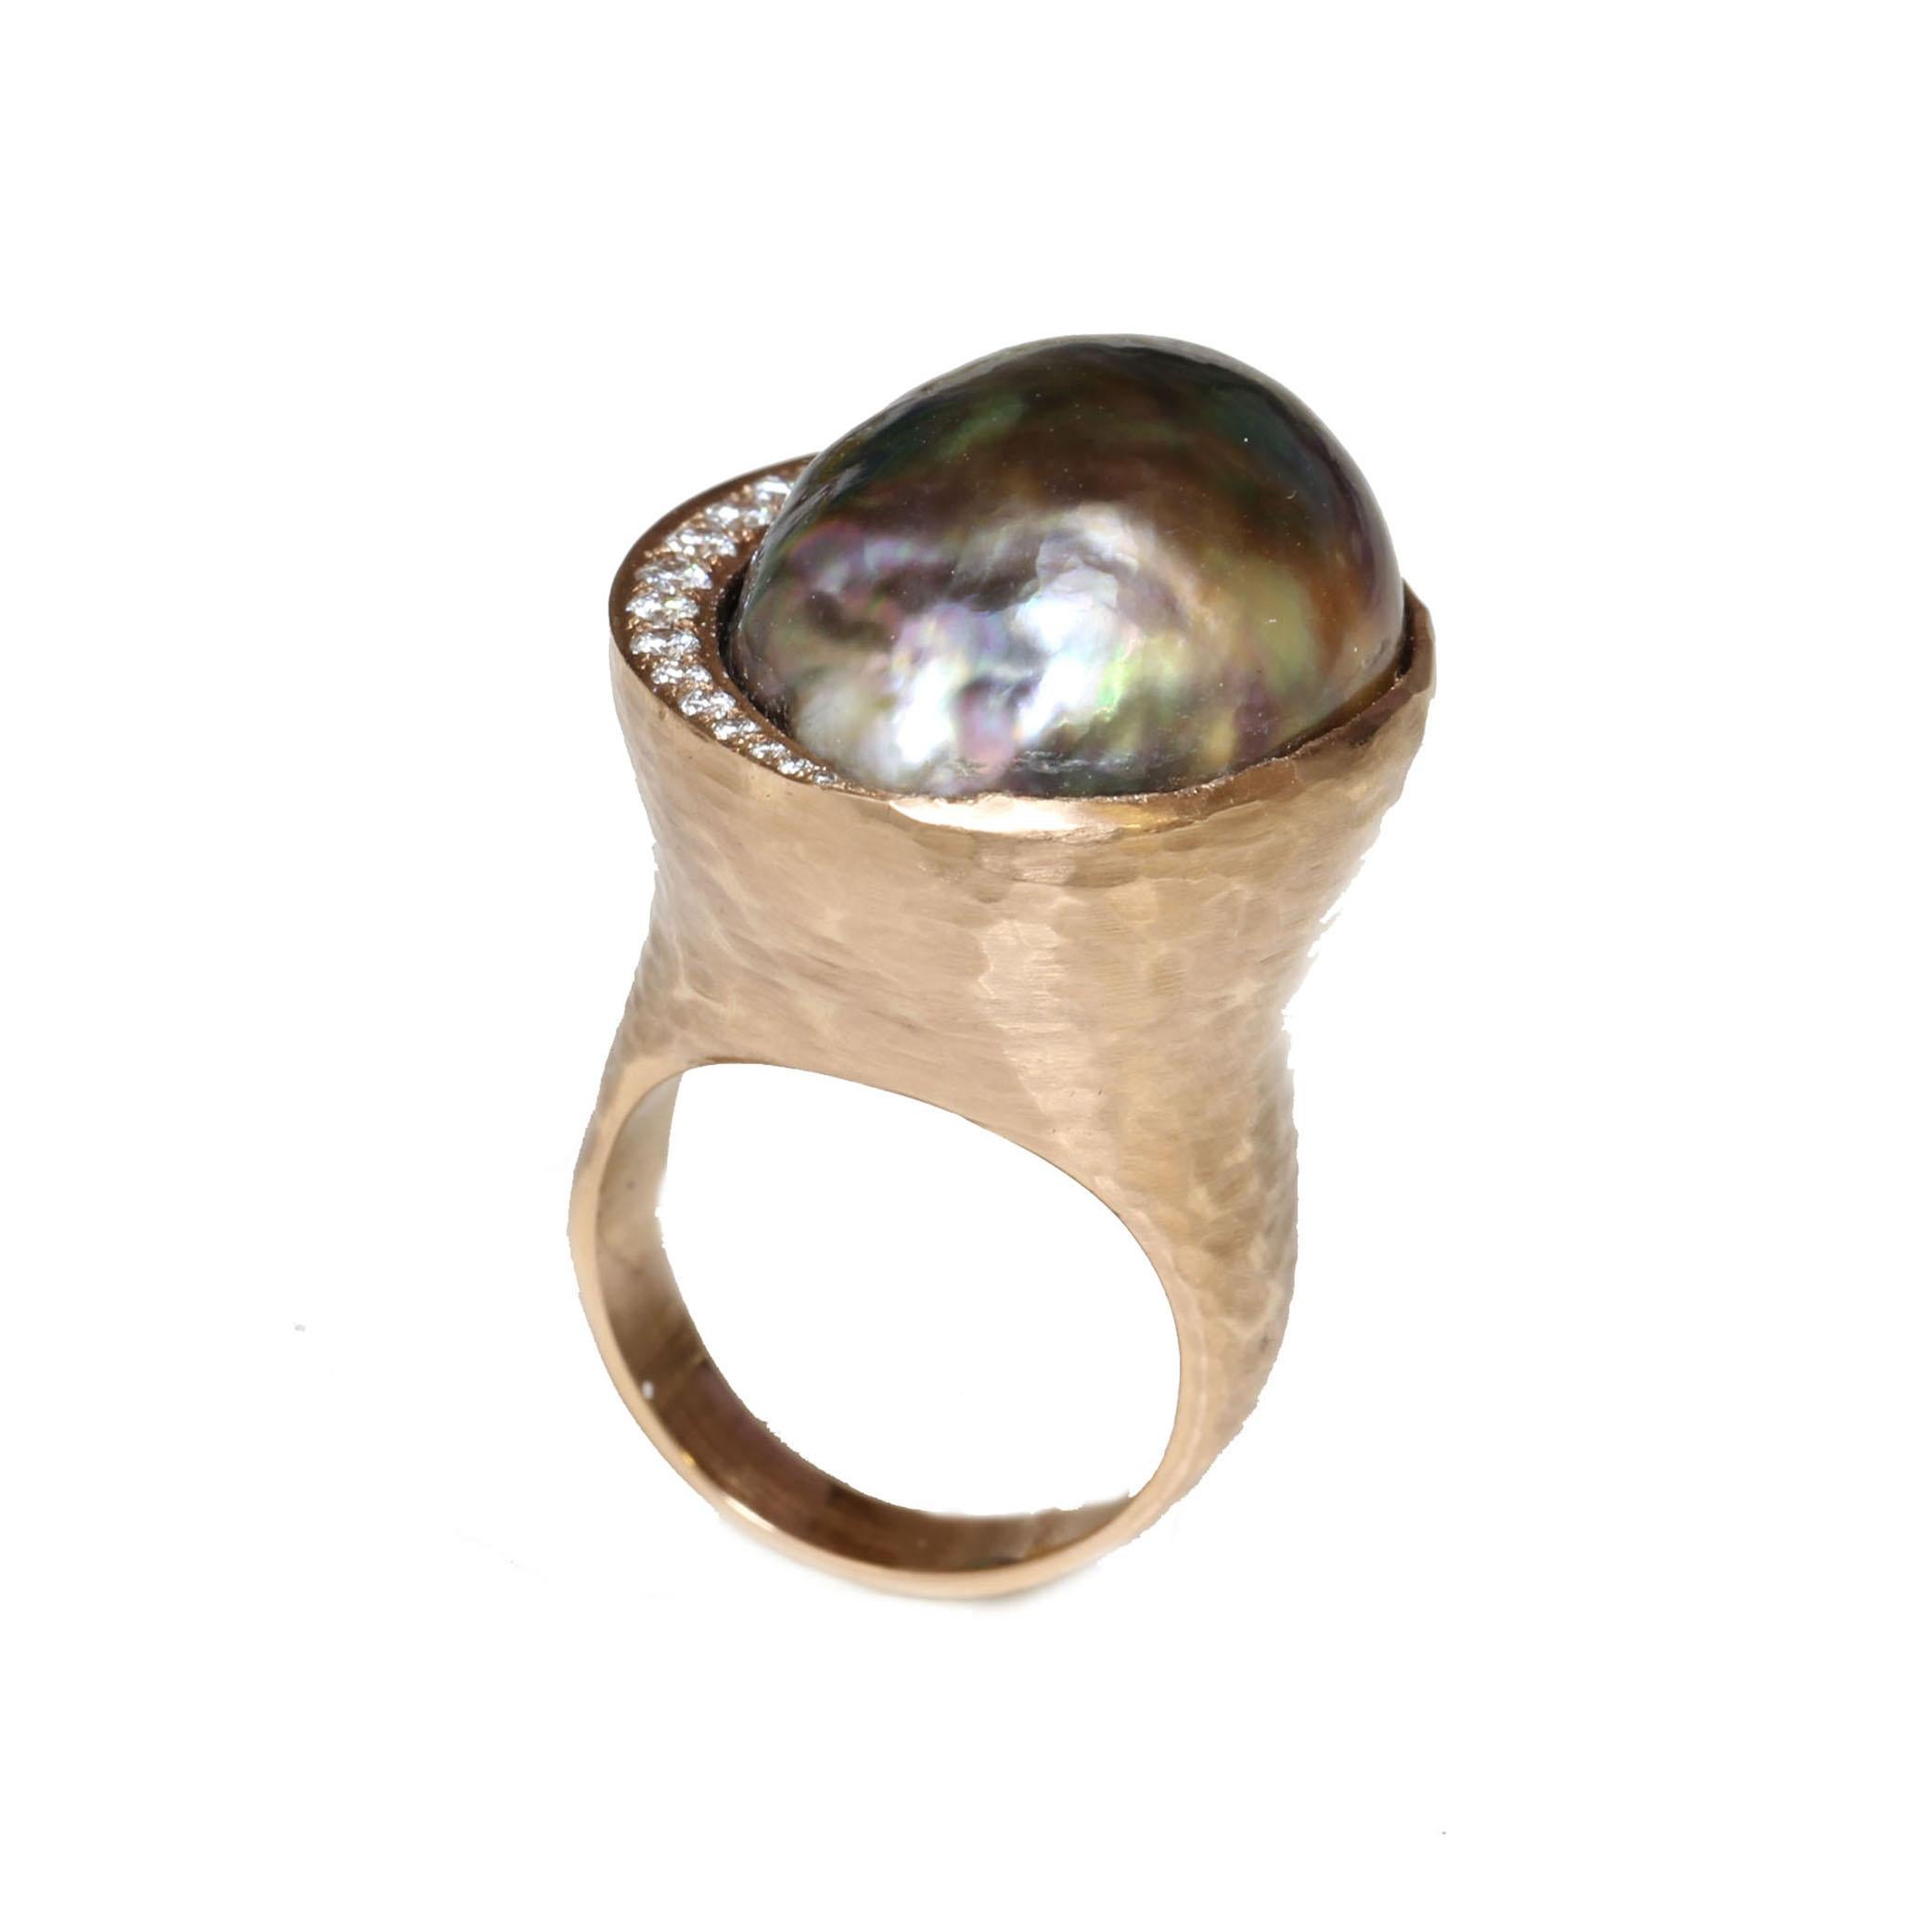 Herkunft: 	Französisch-Polynesien
Perlen-Typ: 	Tahiti-Perle
Perle Größe: 	Ungefähr 22,5 x 17 mm
Perle Farbe: 	Natürlicher intensiver Pfau
Perlenform: 	Barock
Perle Oberfläche: AAA
Perlglanz: 	AAA Edelstein
Perlmutt: 	Top
Diamant: 	0,25ct
Ringgröße: